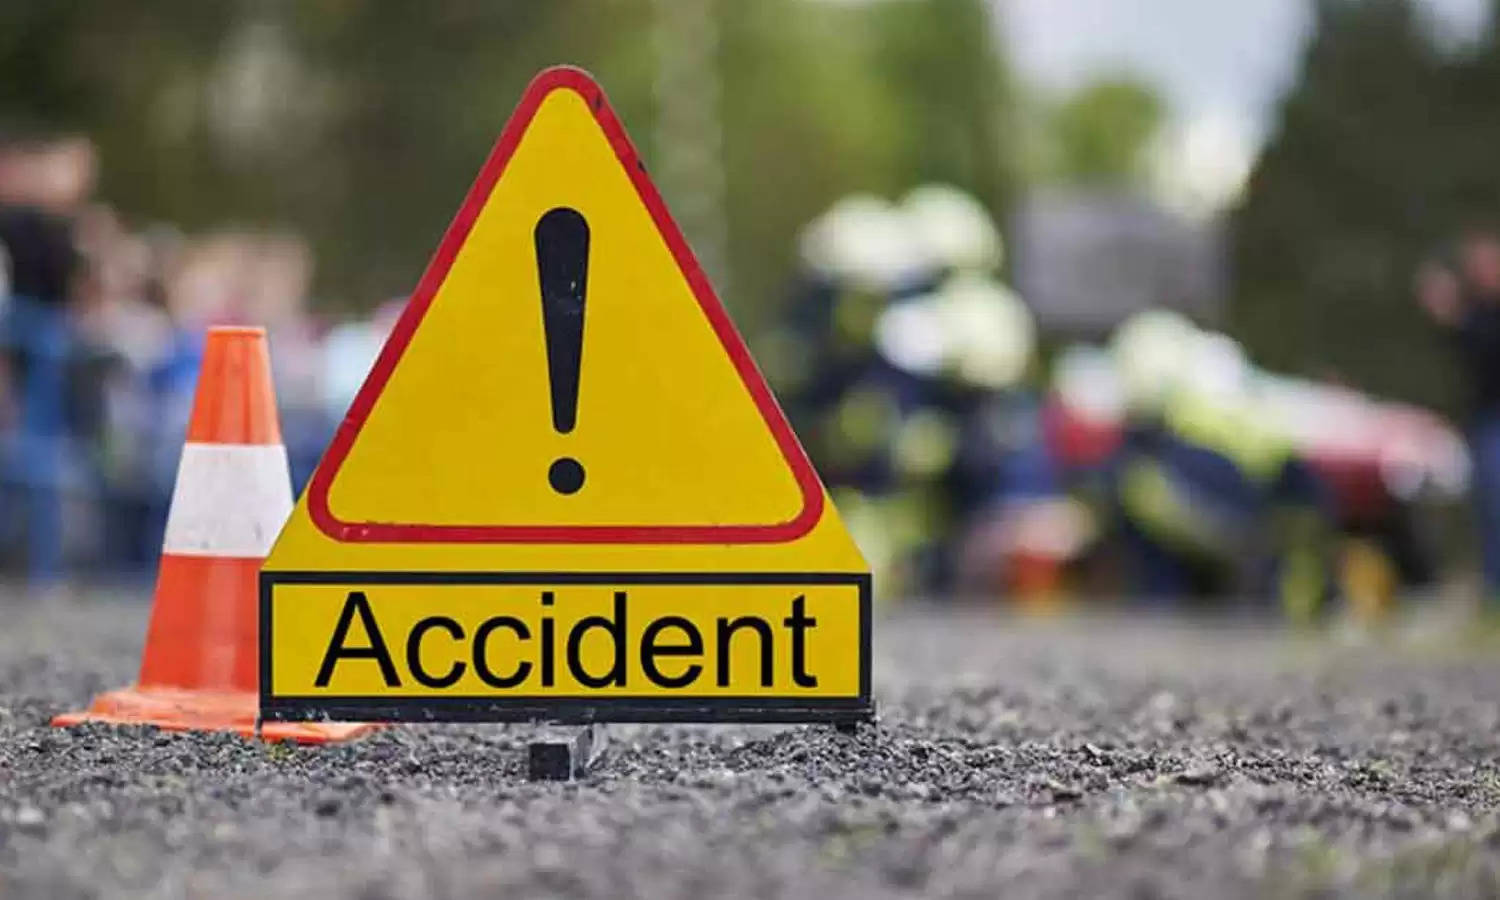 Uttarakhand News Bulletin-24 : सांड से टकराई तेज रफ्तार कार, 7 घायल; जानिए रुद्रपुर की ऐसी ही तमाम छोटी बड़ी खबरें...